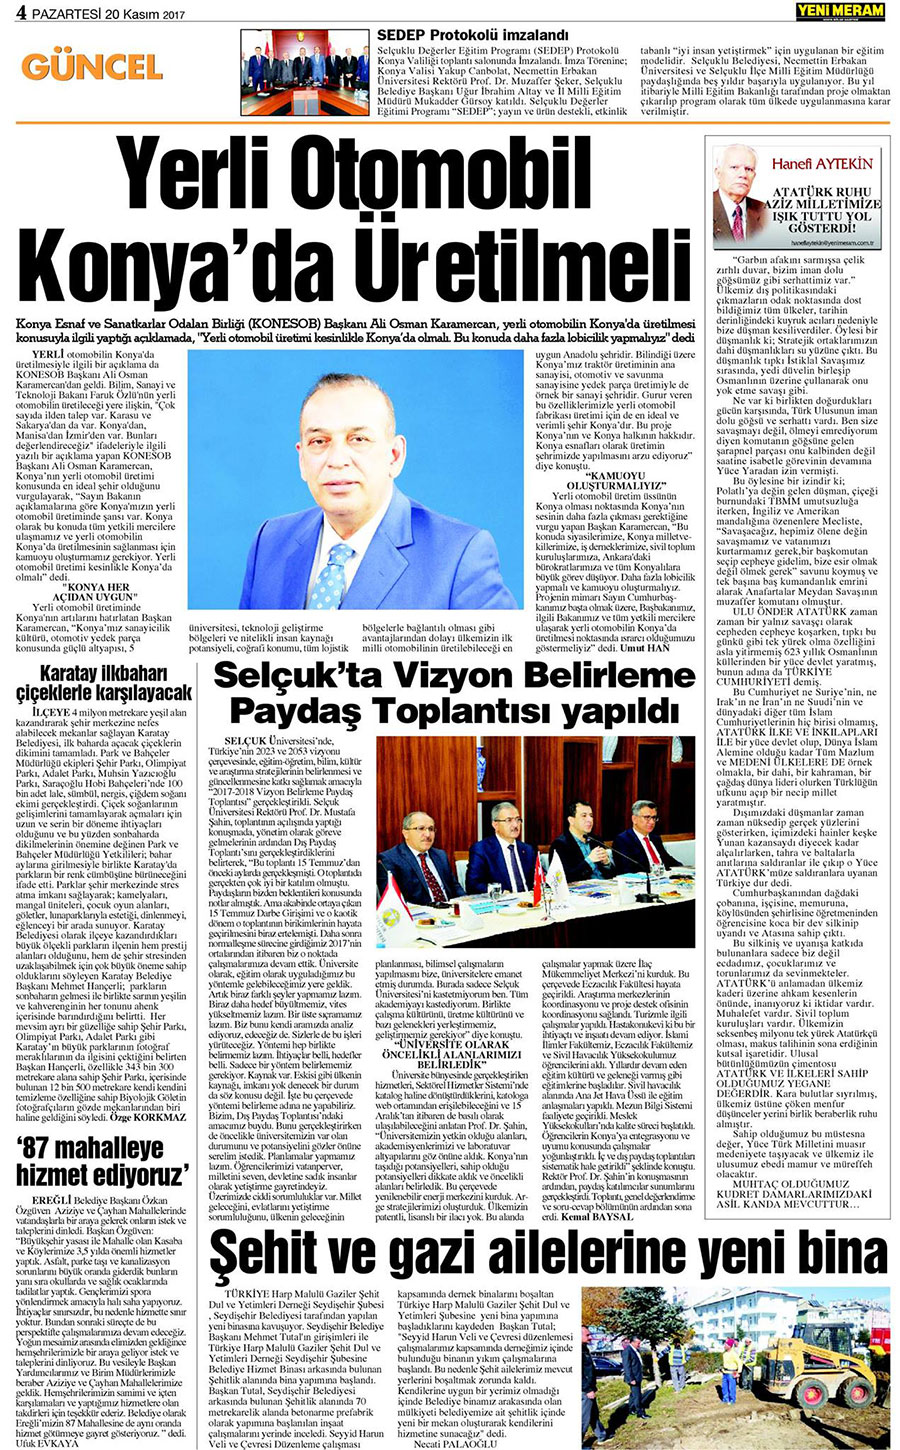 20 Kasım 2017 Yeni Meram Gazetesi